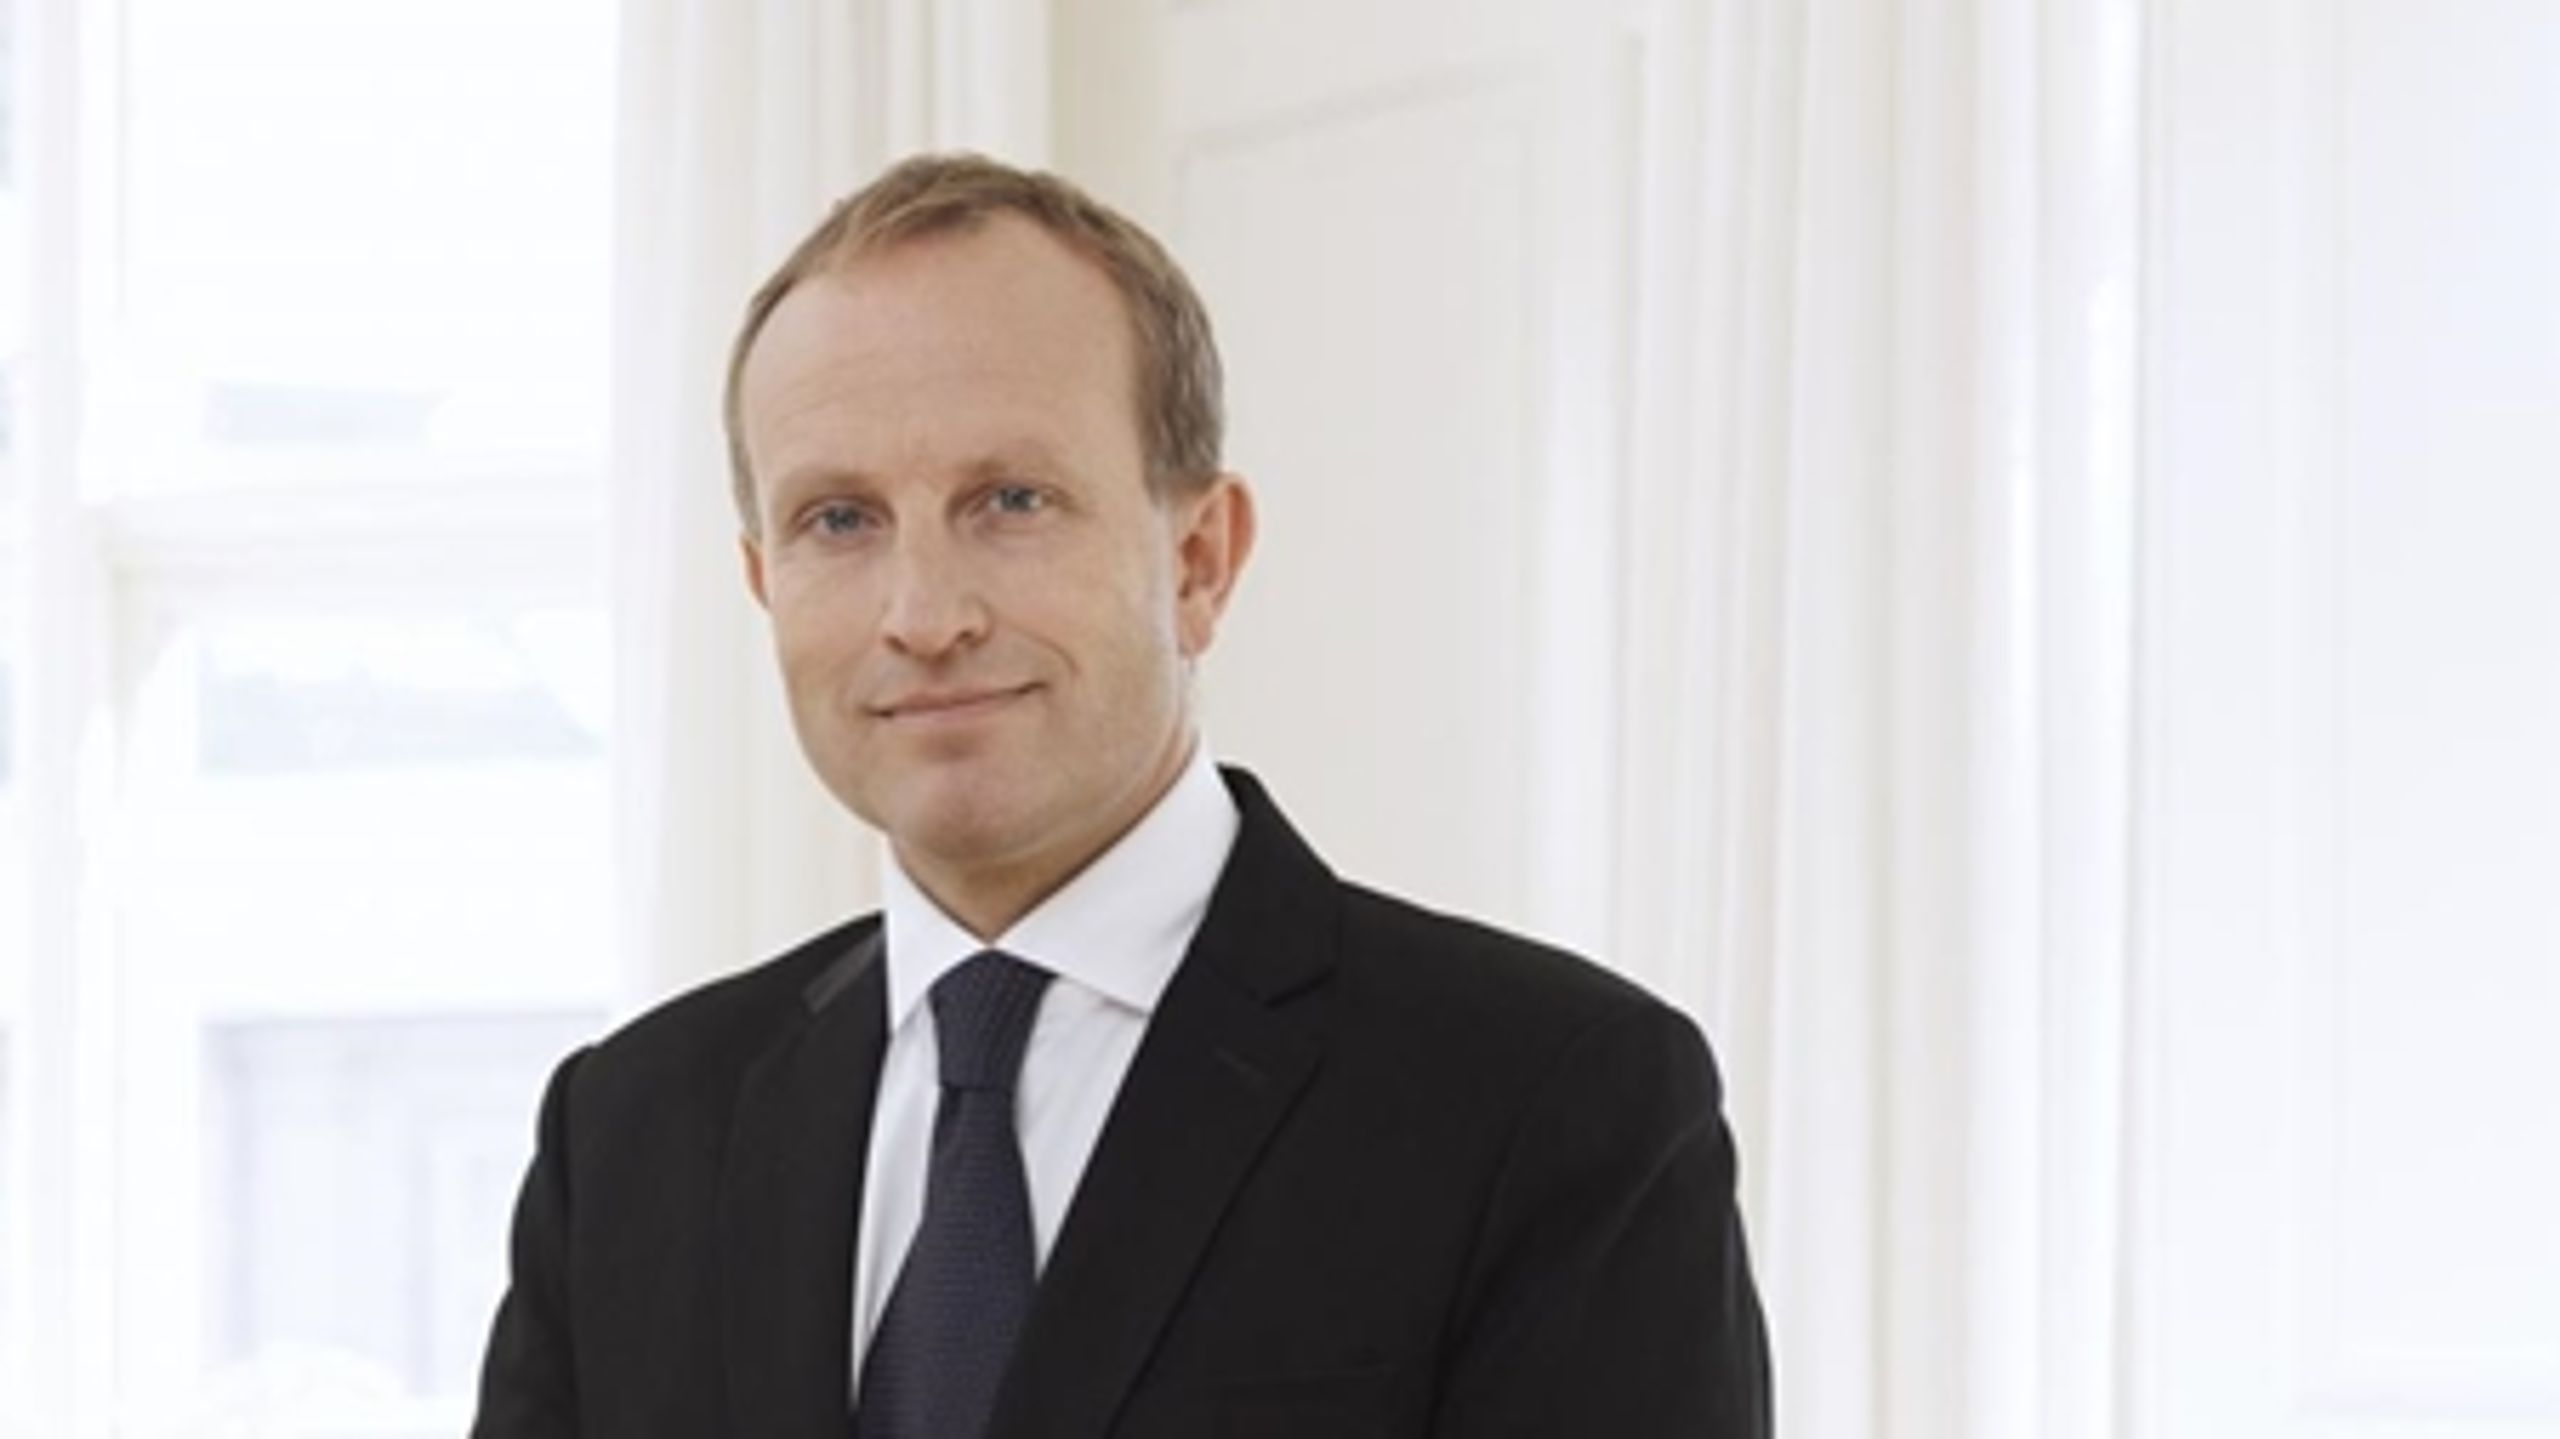 Siden Ulrik Vestergaard Knudsen blev departementschef i august 2013 i Udenrigsministeriet, har han haft otte politiske chefer. Billede: Martin Lidegaard, ny udenrigsminister.